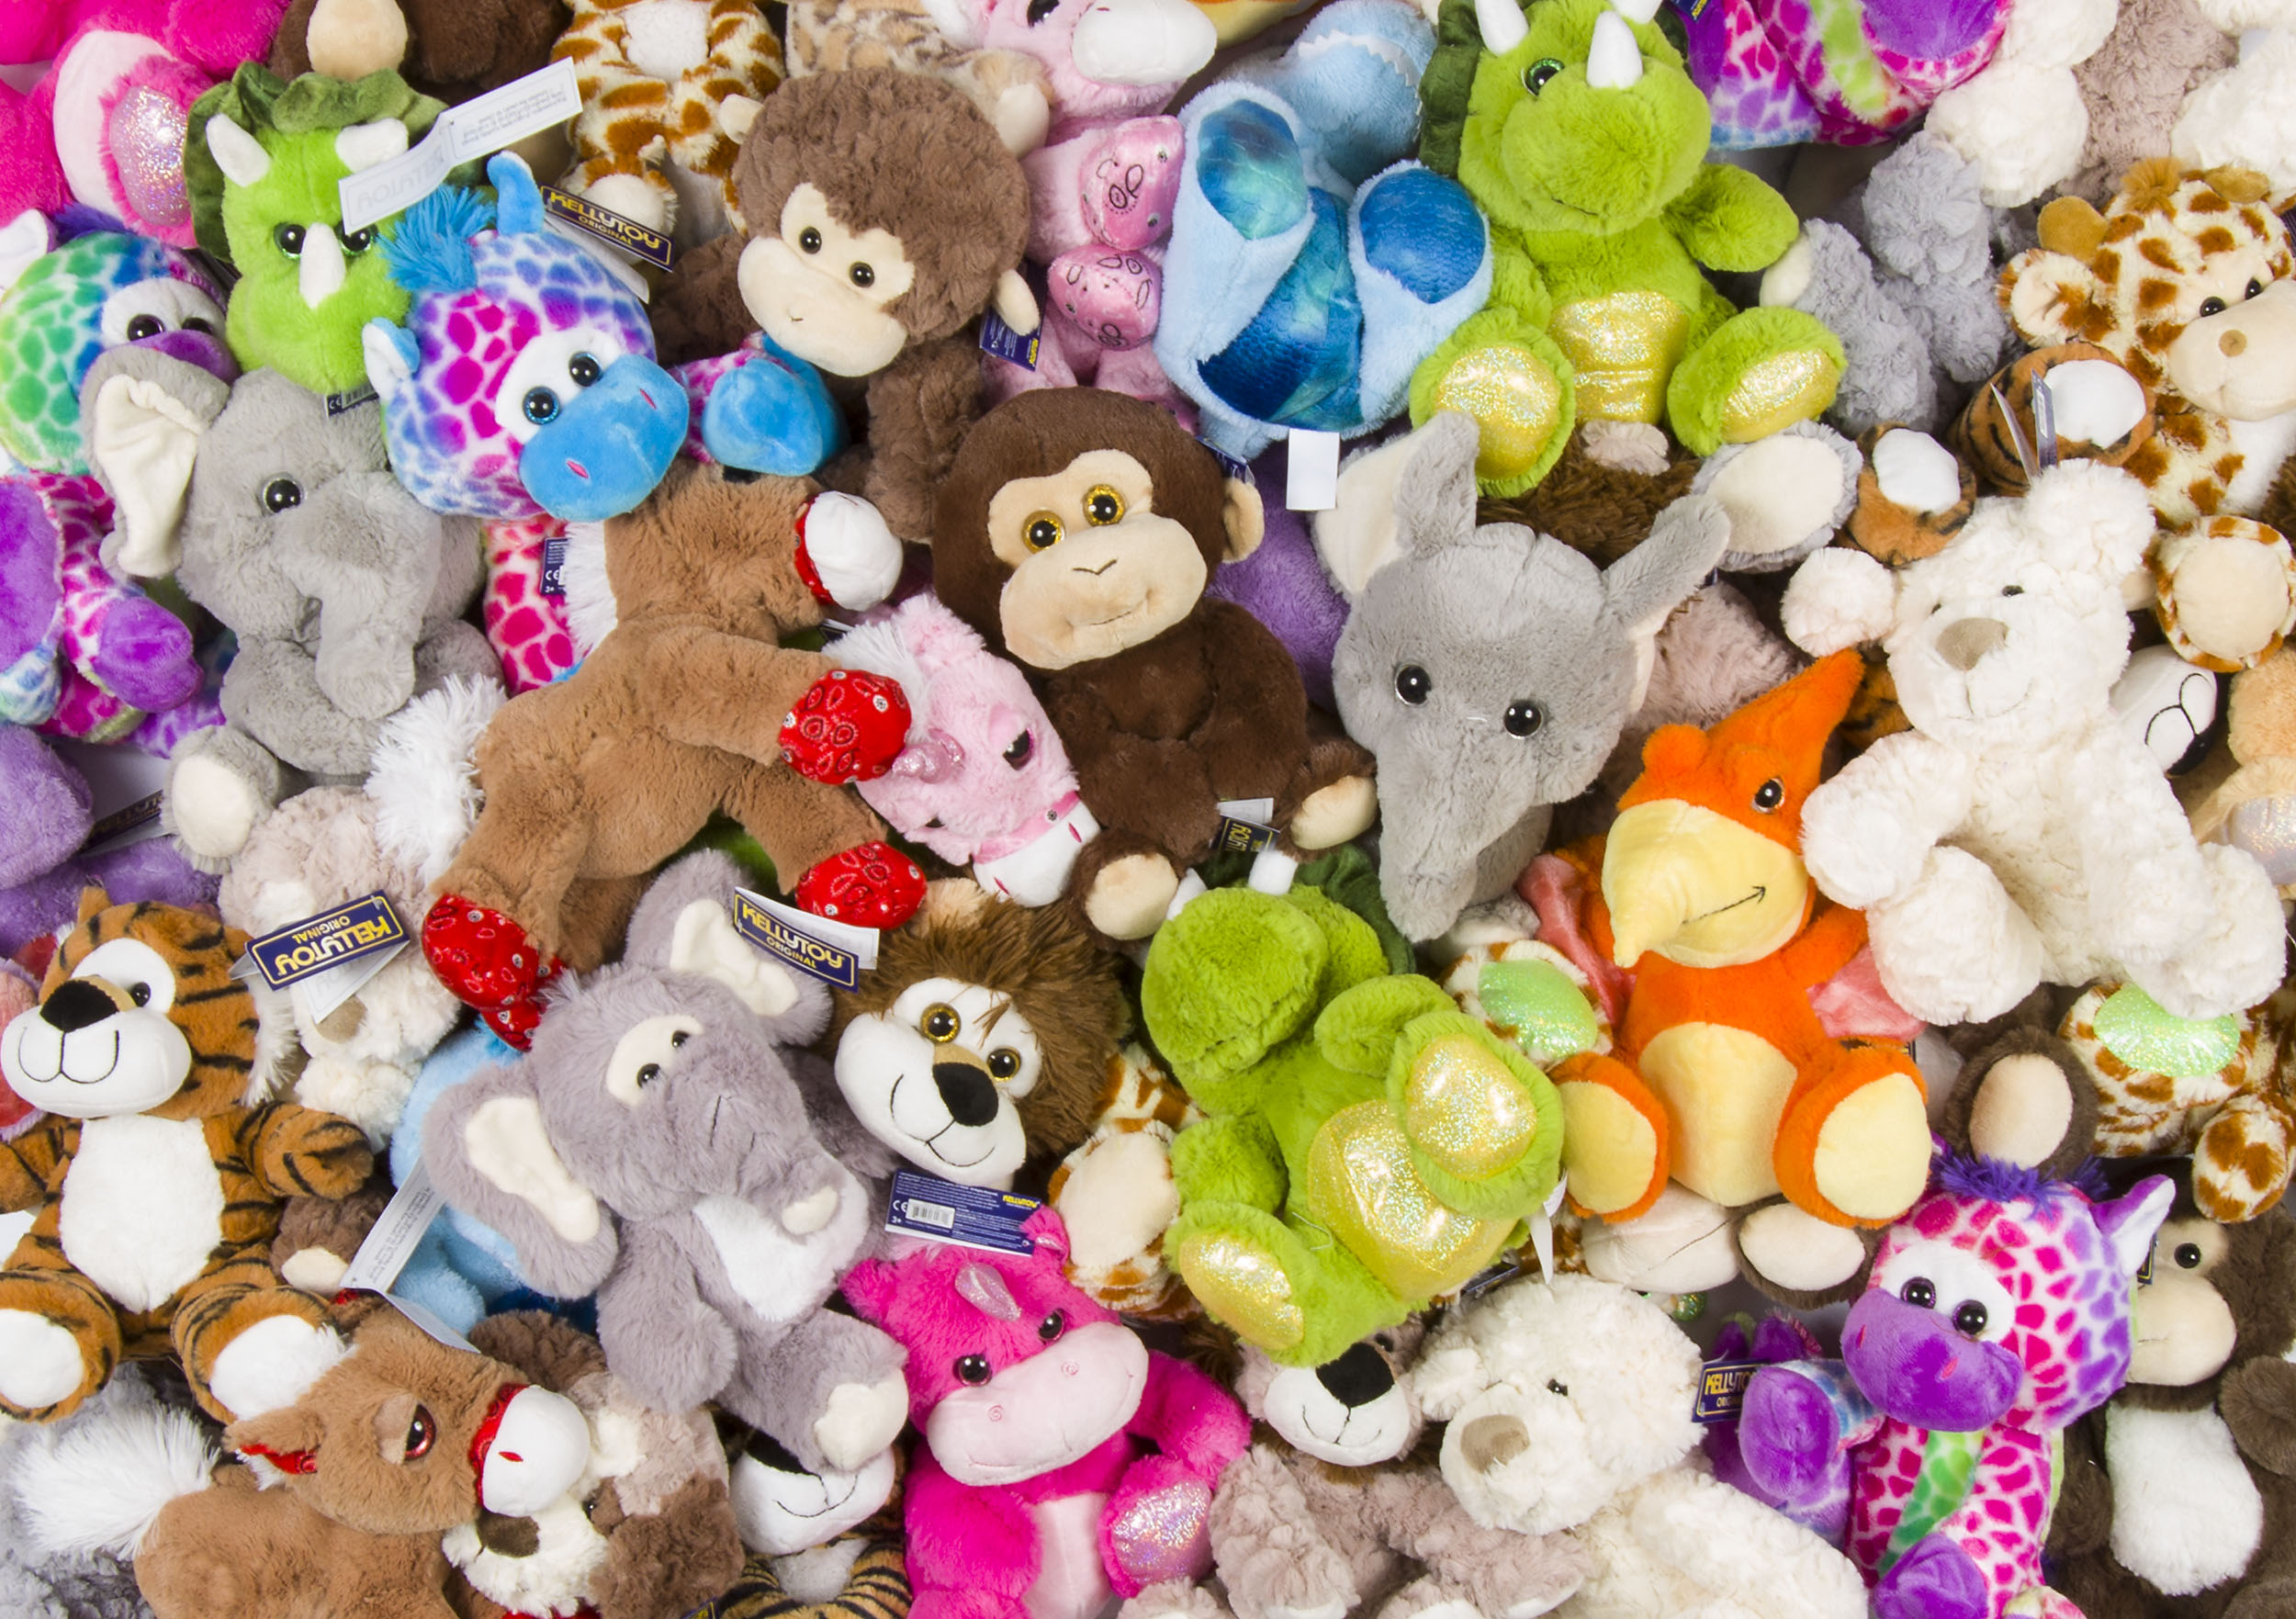 Бизнесмена осудили за контрабанду детских игрушек в Алматинской области